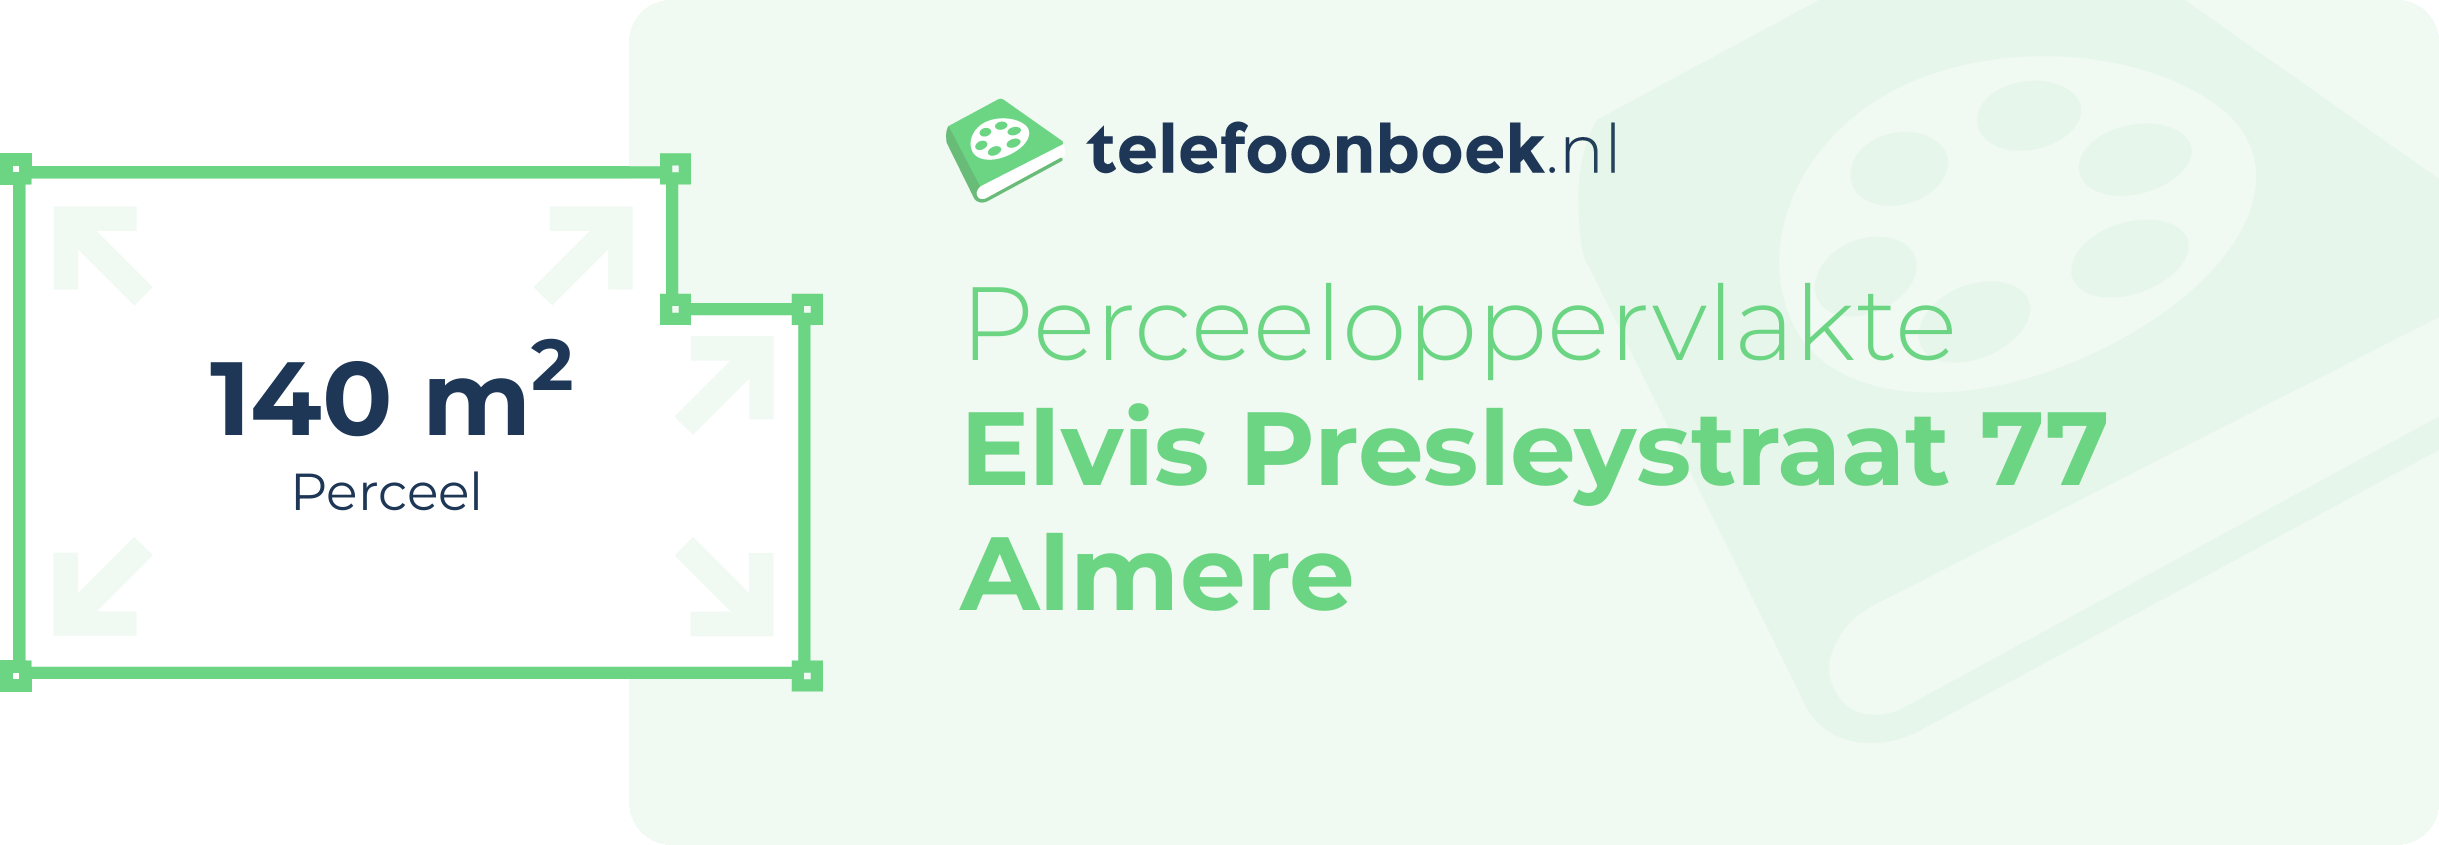 Perceeloppervlakte Elvis Presleystraat 77 Almere